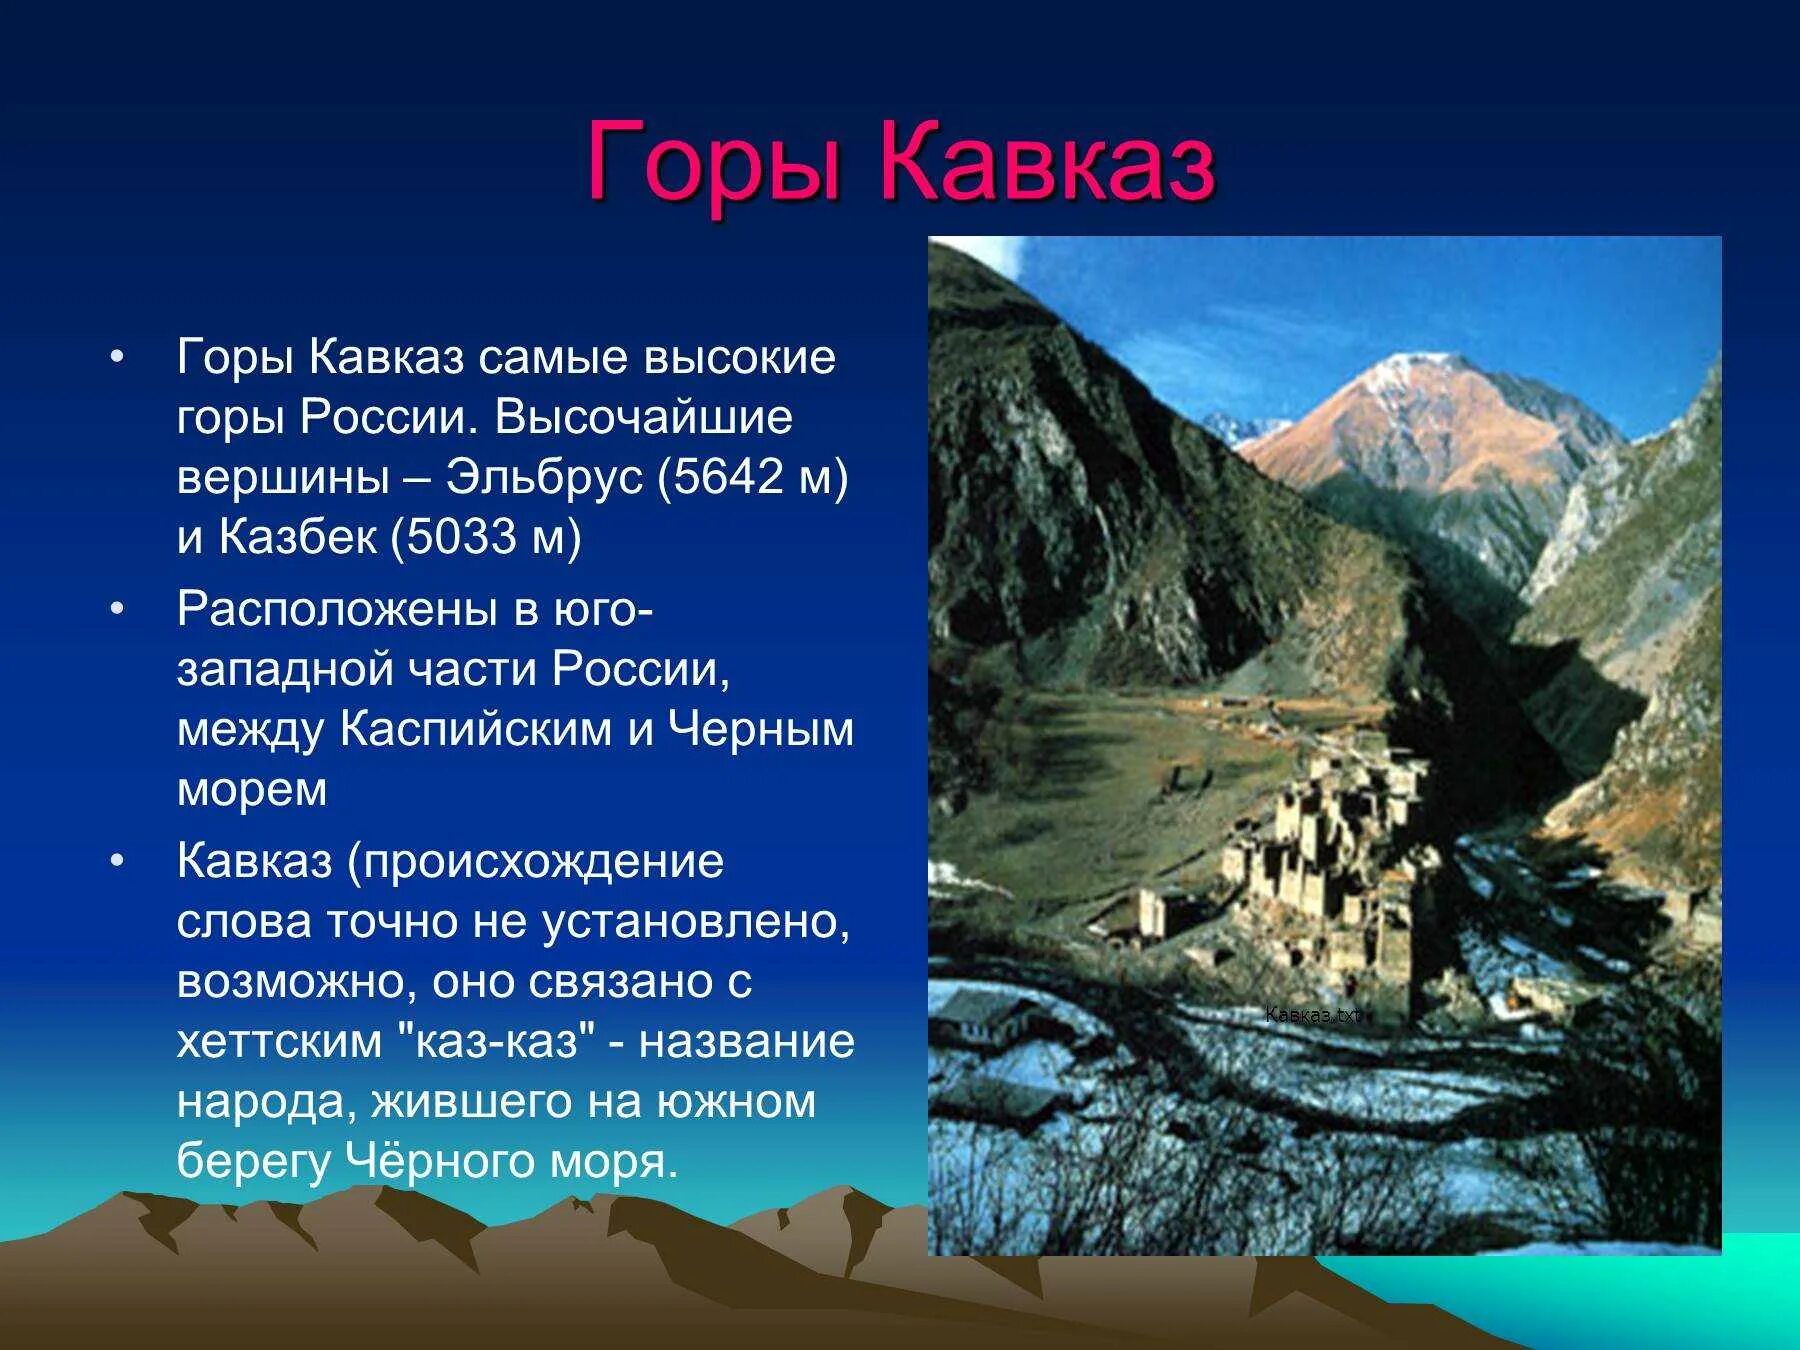 Высочайшие вершины Северного Кавказа. Кавказские горы горные хребты Кавказа. Кавказ самые высокие горы России 8 класс география.